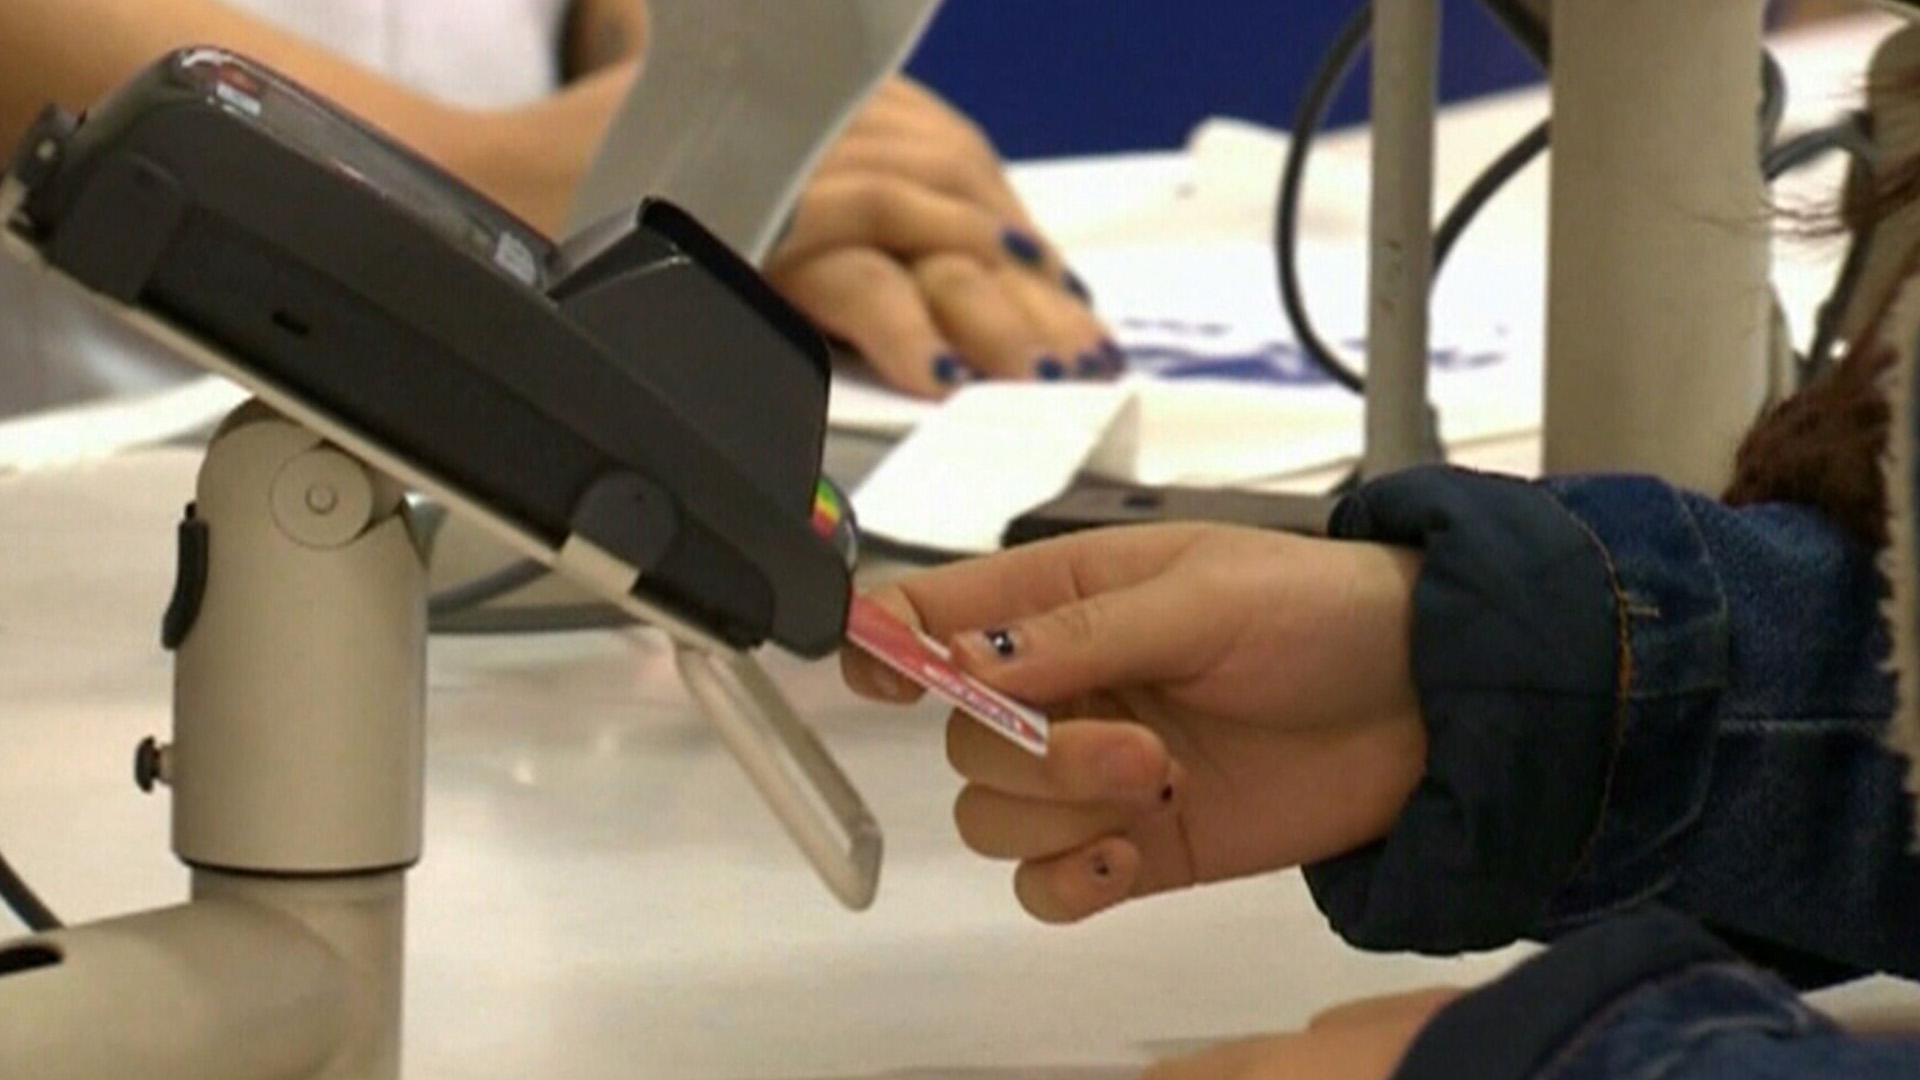 Un homme de l'Ontario a été choqué d'apprendre qu'il devait payer 5 700 dollars de frais frauduleux imputés à sa carte de crédit perdue.